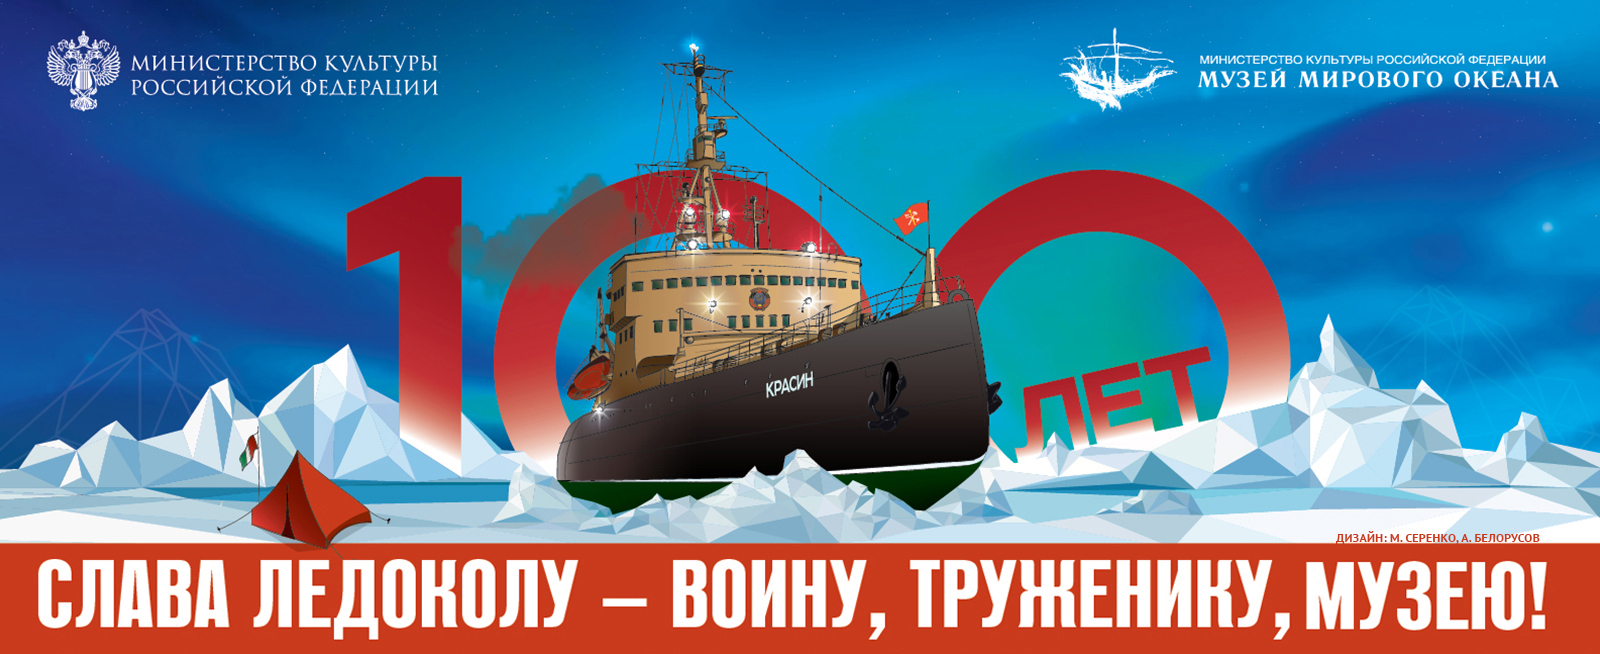 Легендарному ледоколу «Красин» исполняется 100 лет